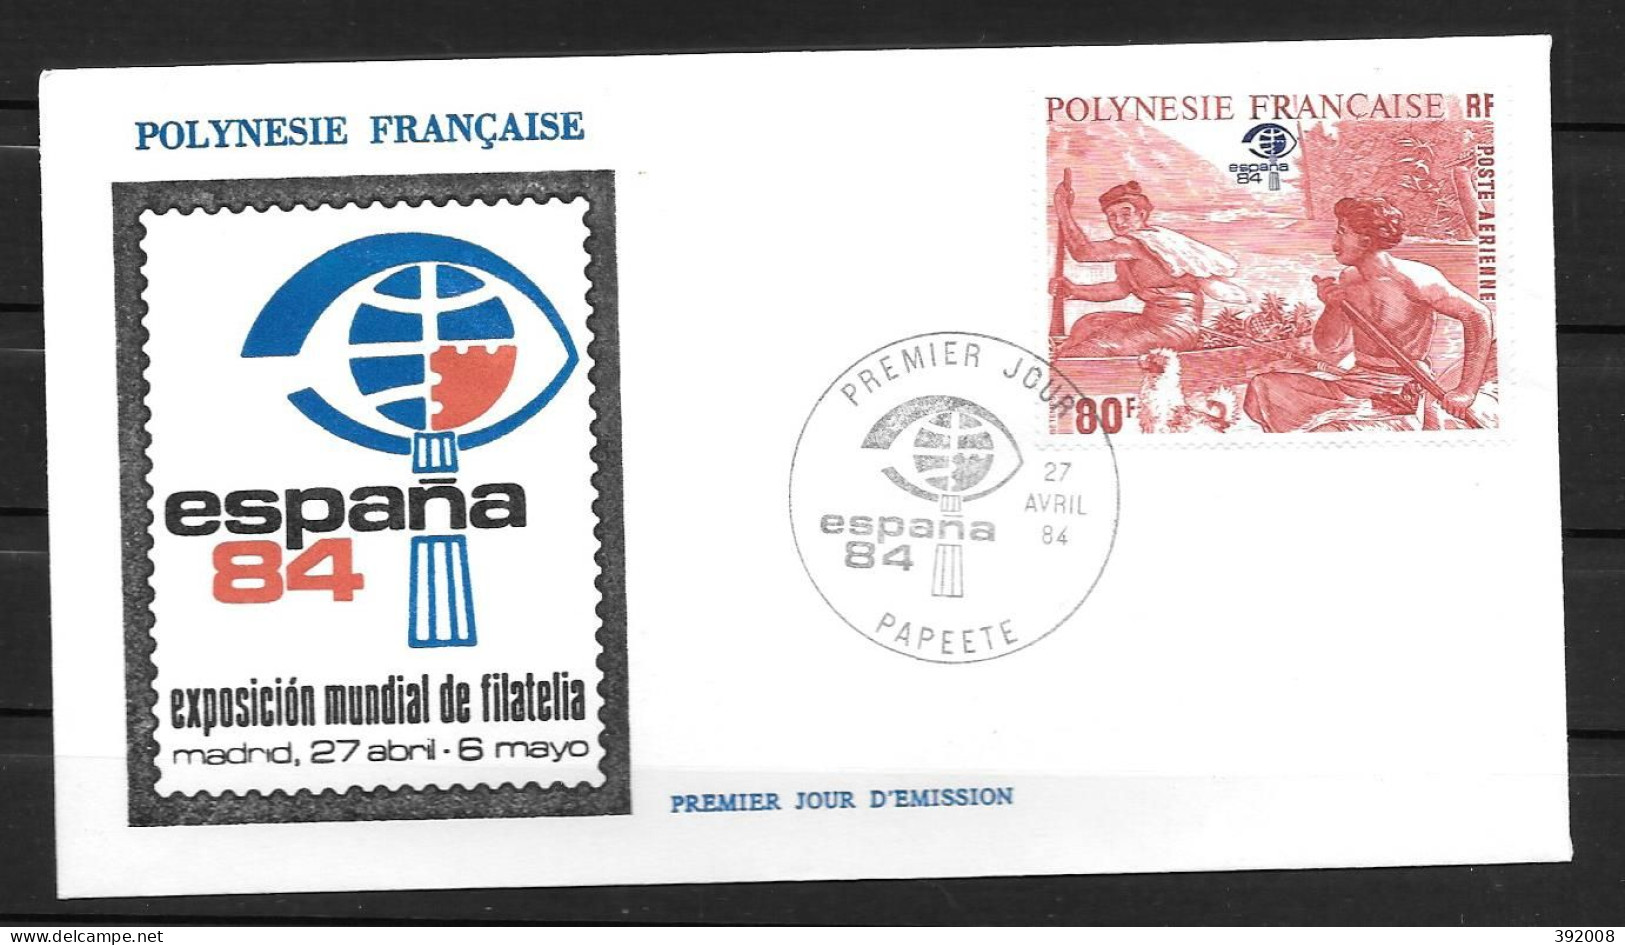 1984 - PA 182 - Espana 84 - 2 - FDC